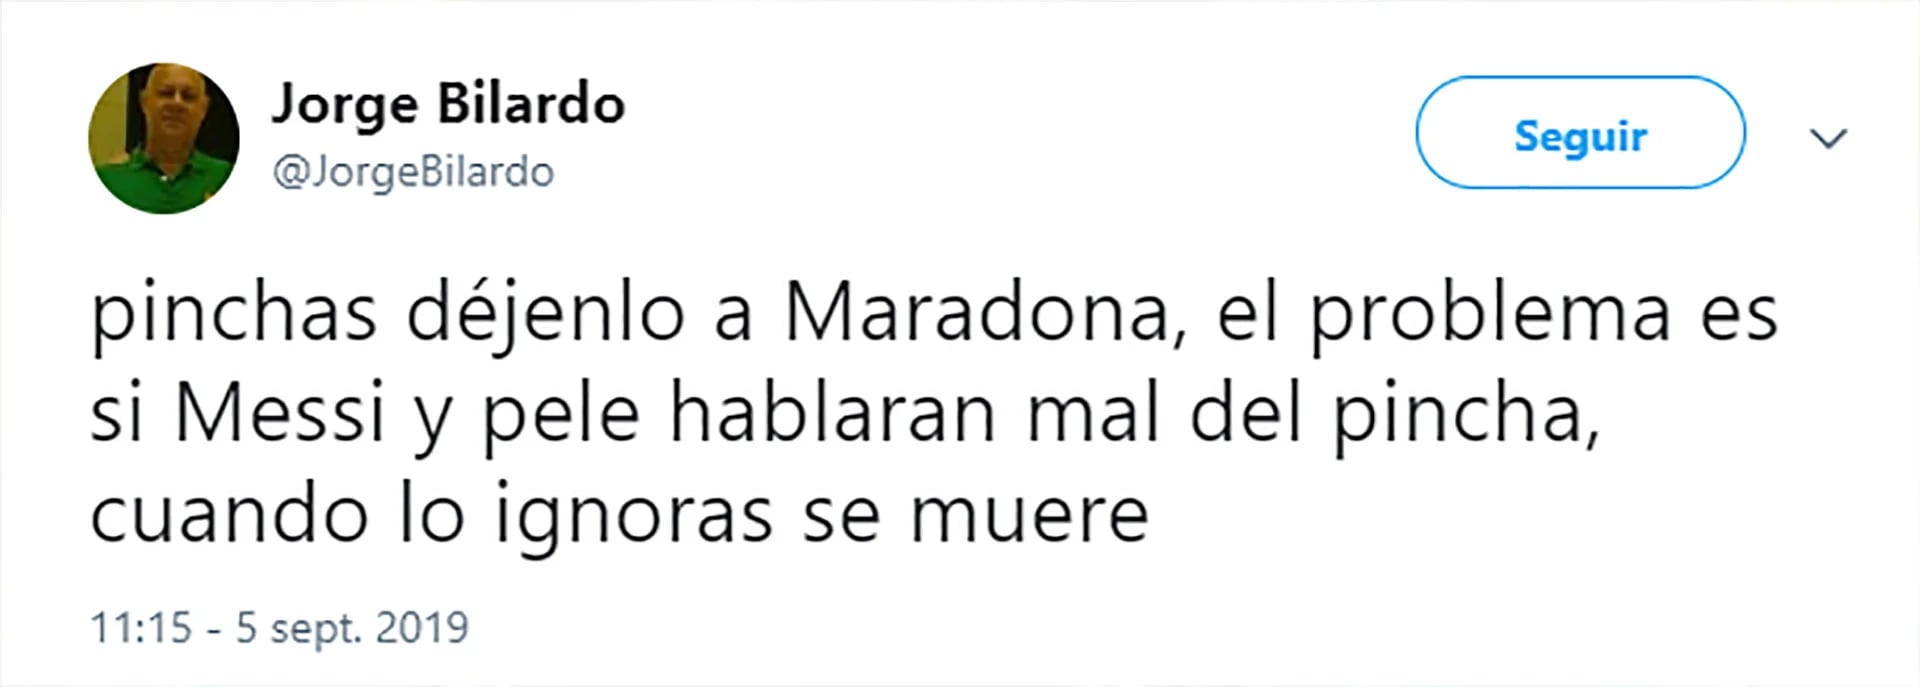 El mensaje del hermano de Bilardo contra Maradona